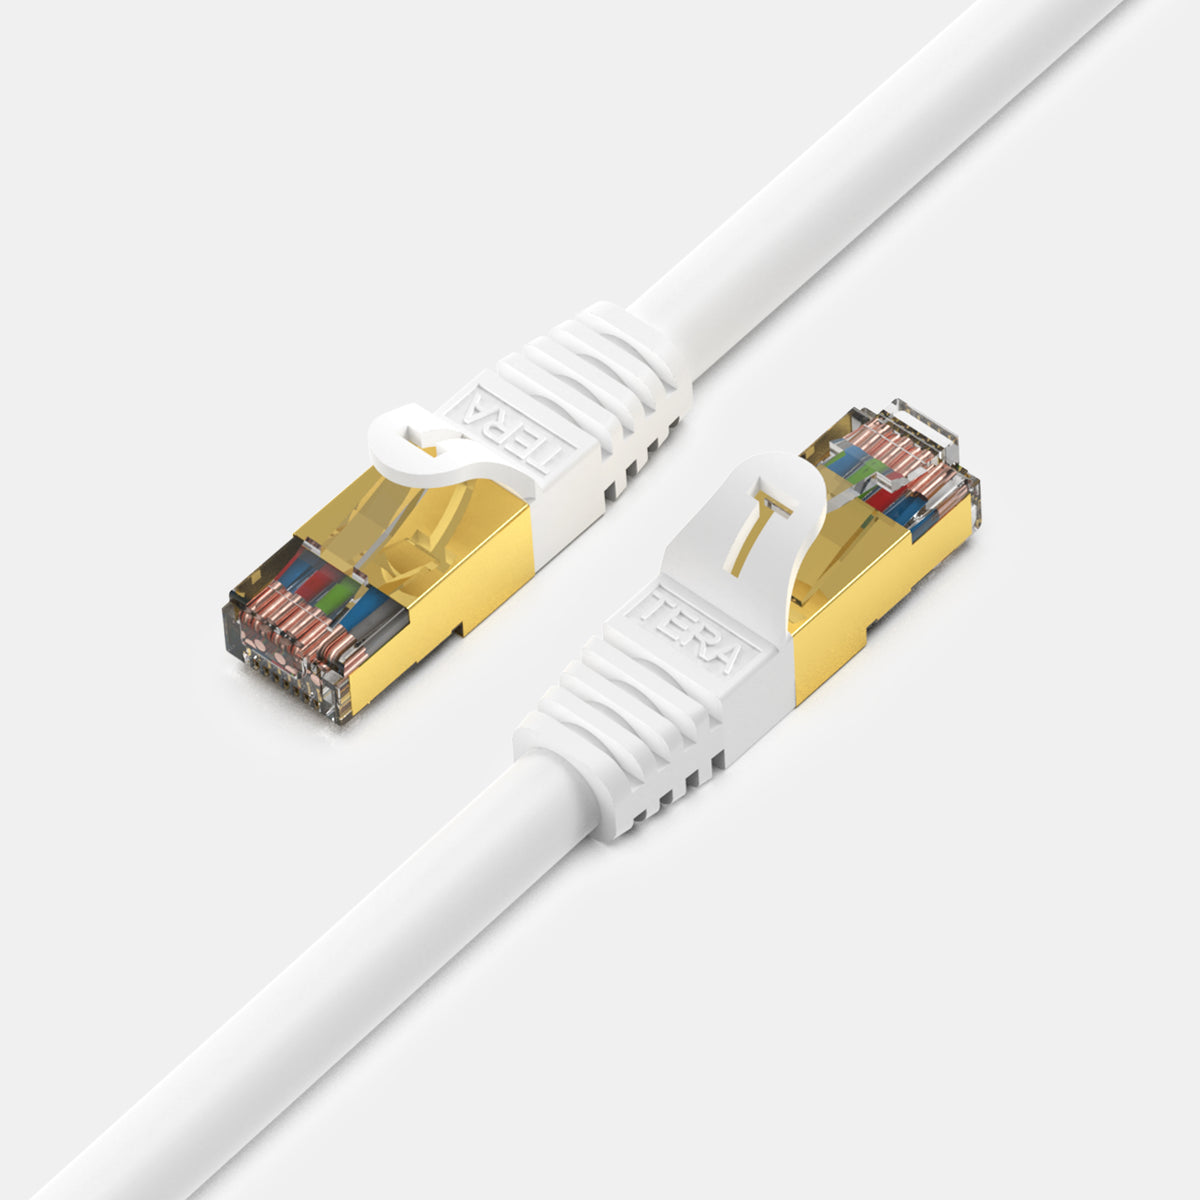 Cablecreation CL0257 1m Conception du Coude Cat7 Câble Ethernet Gigabit  RJ45 Cable LAN 10 Gbit - Angle de Hausse